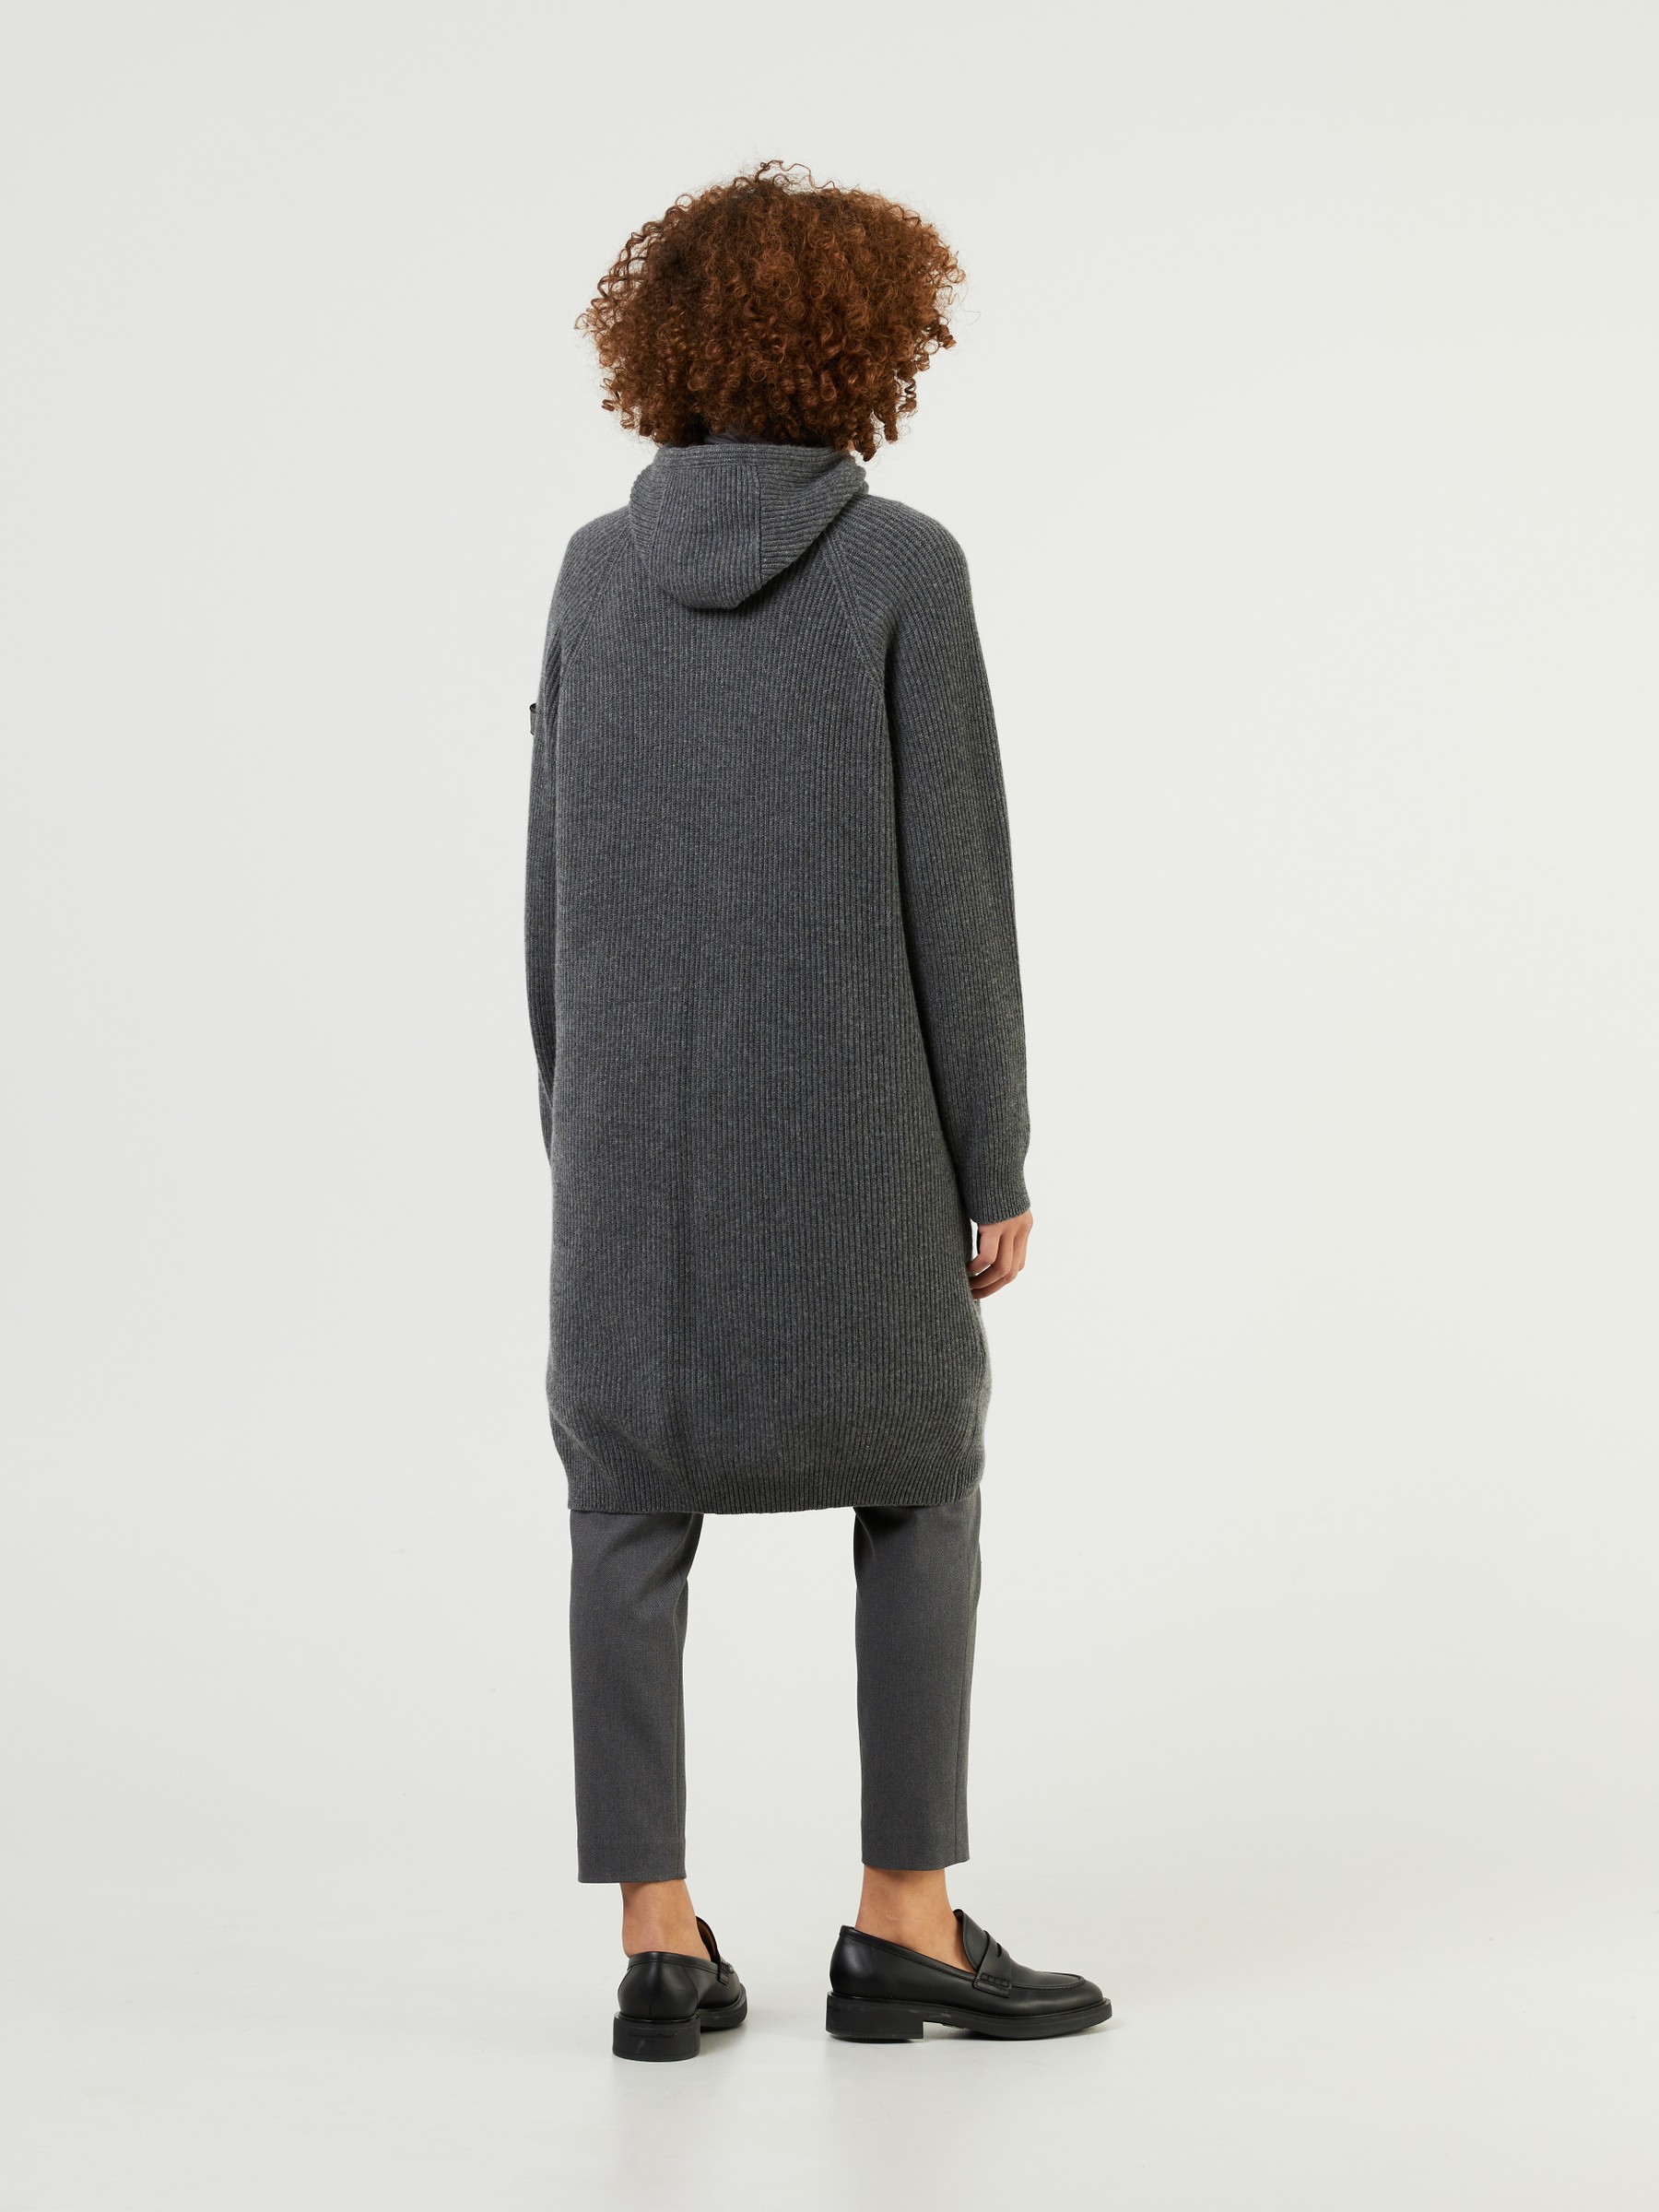 Brunello Cucinelli Cashmere-Mantel mit integrierter Weste Anthrazit in Grau Damen Bekleidung Pullover und Strickwaren Sweatjacken 